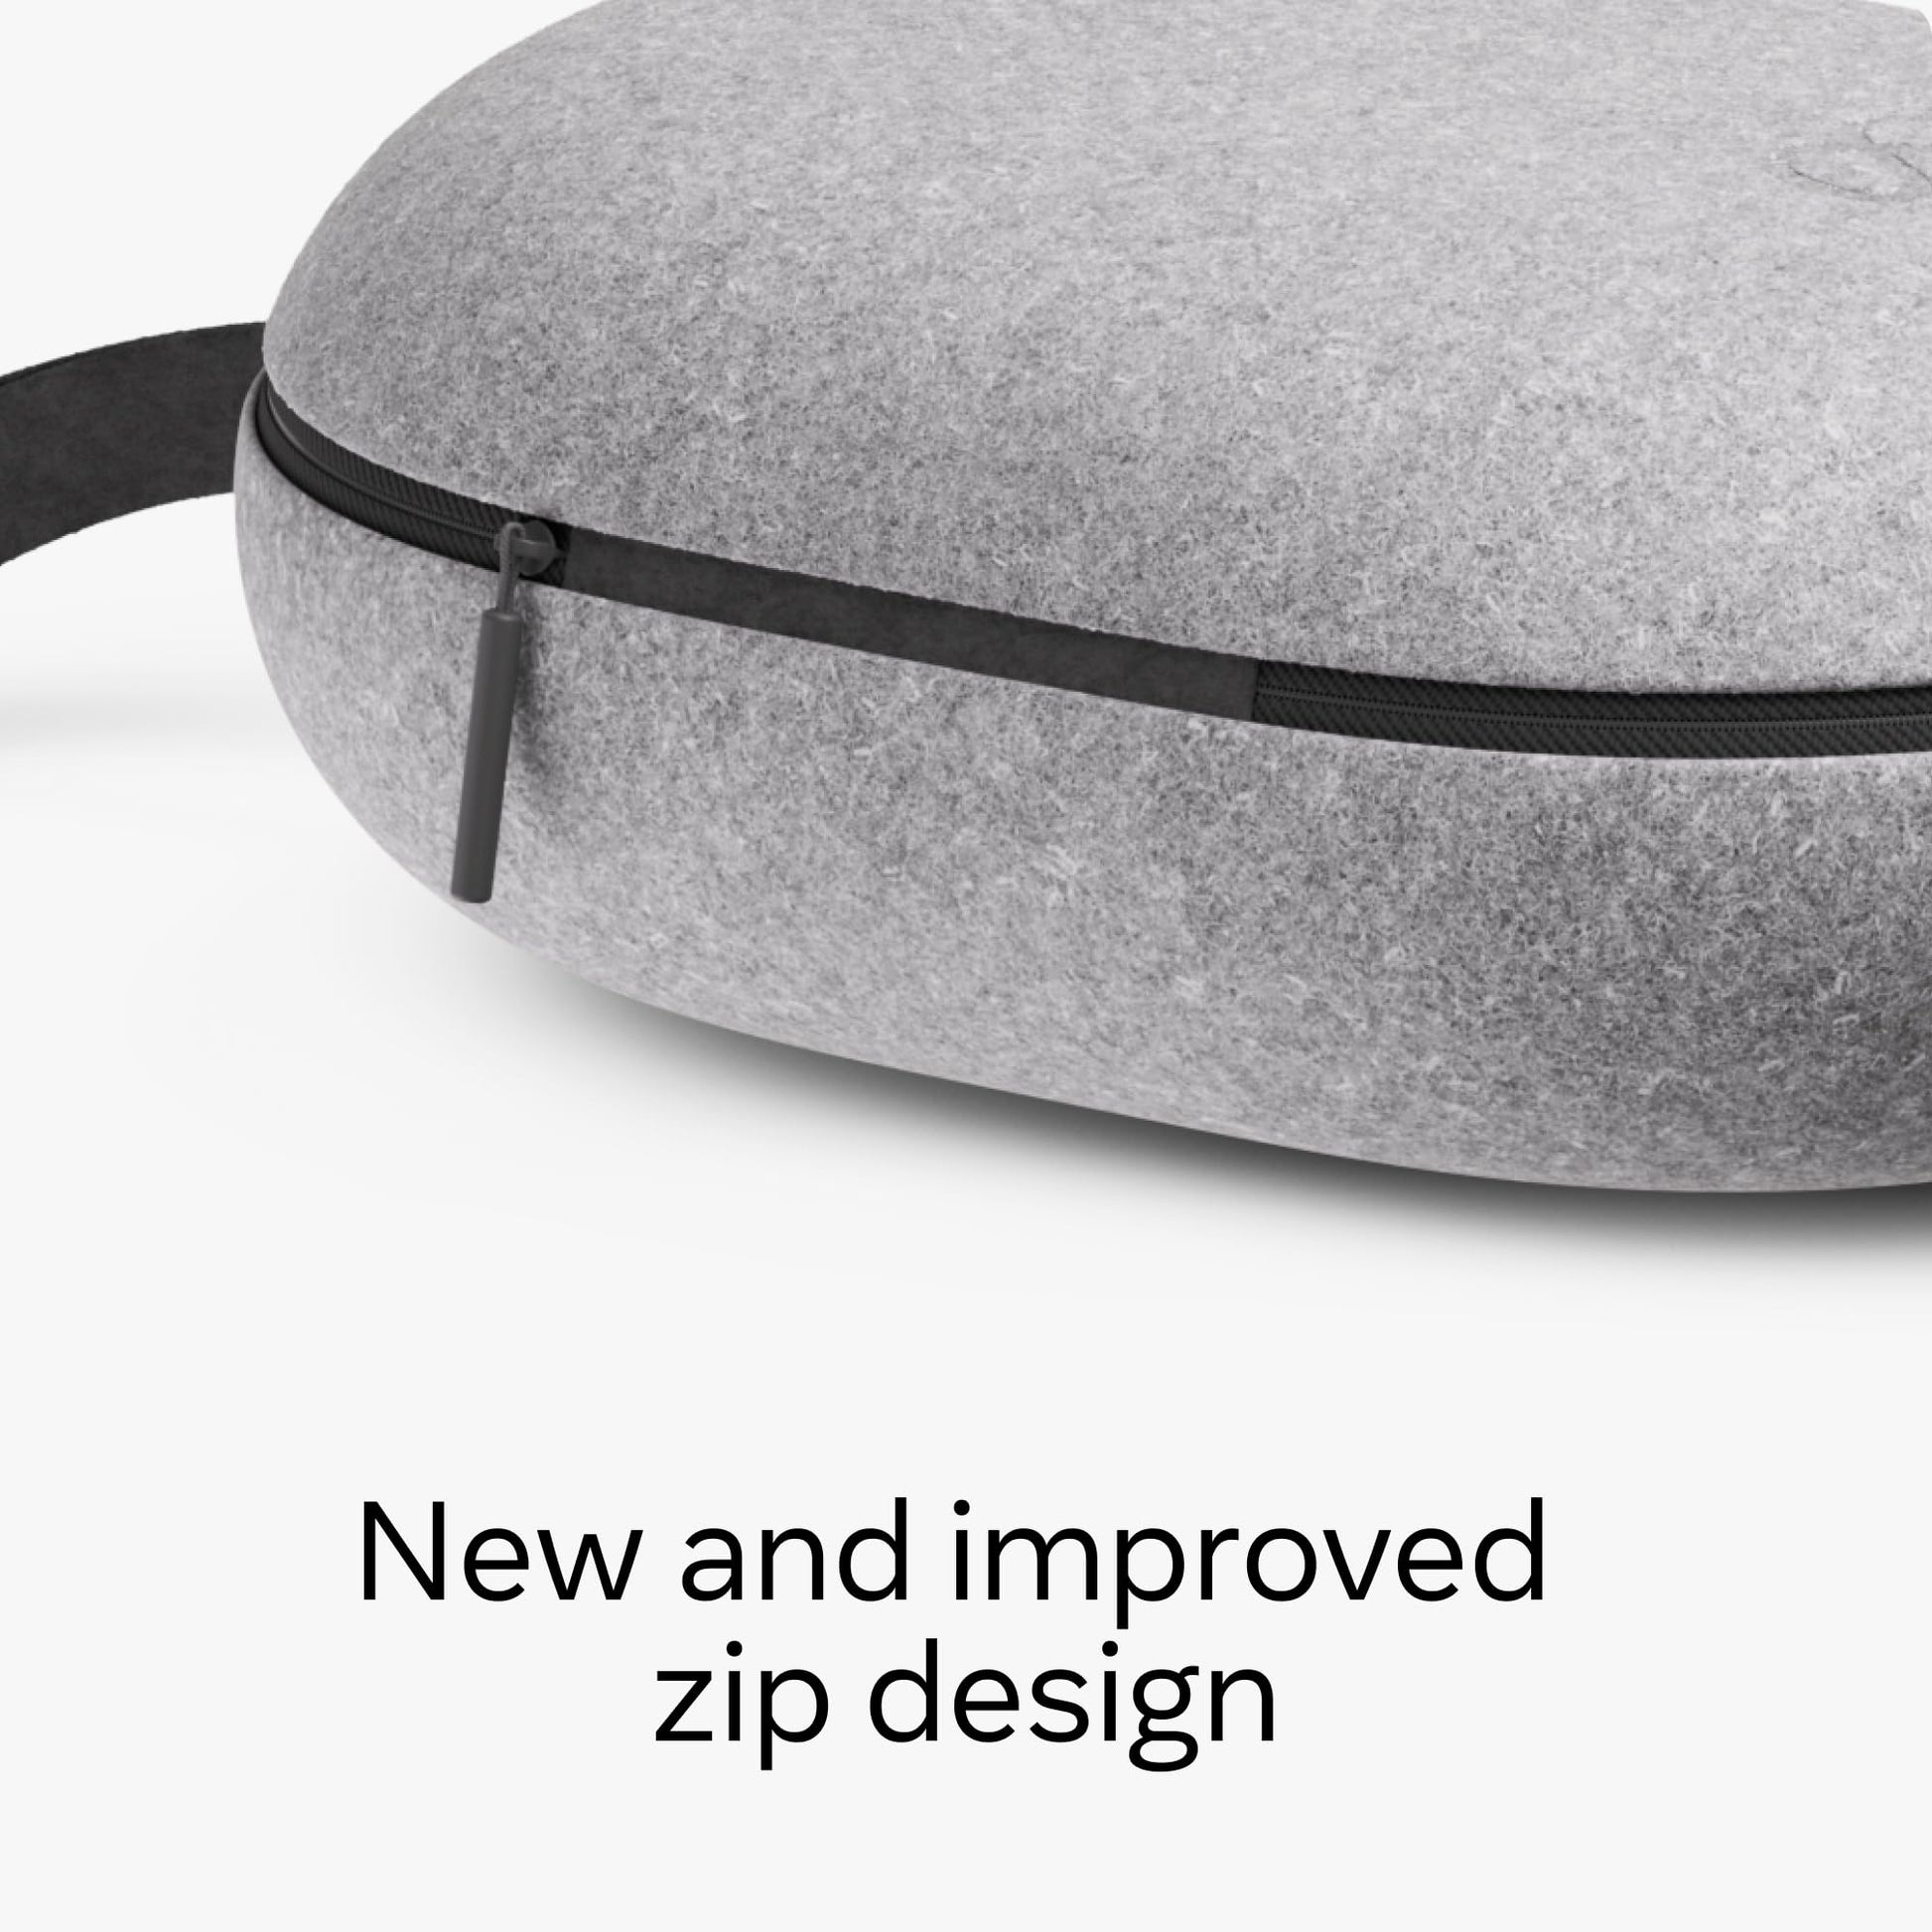 Zip design